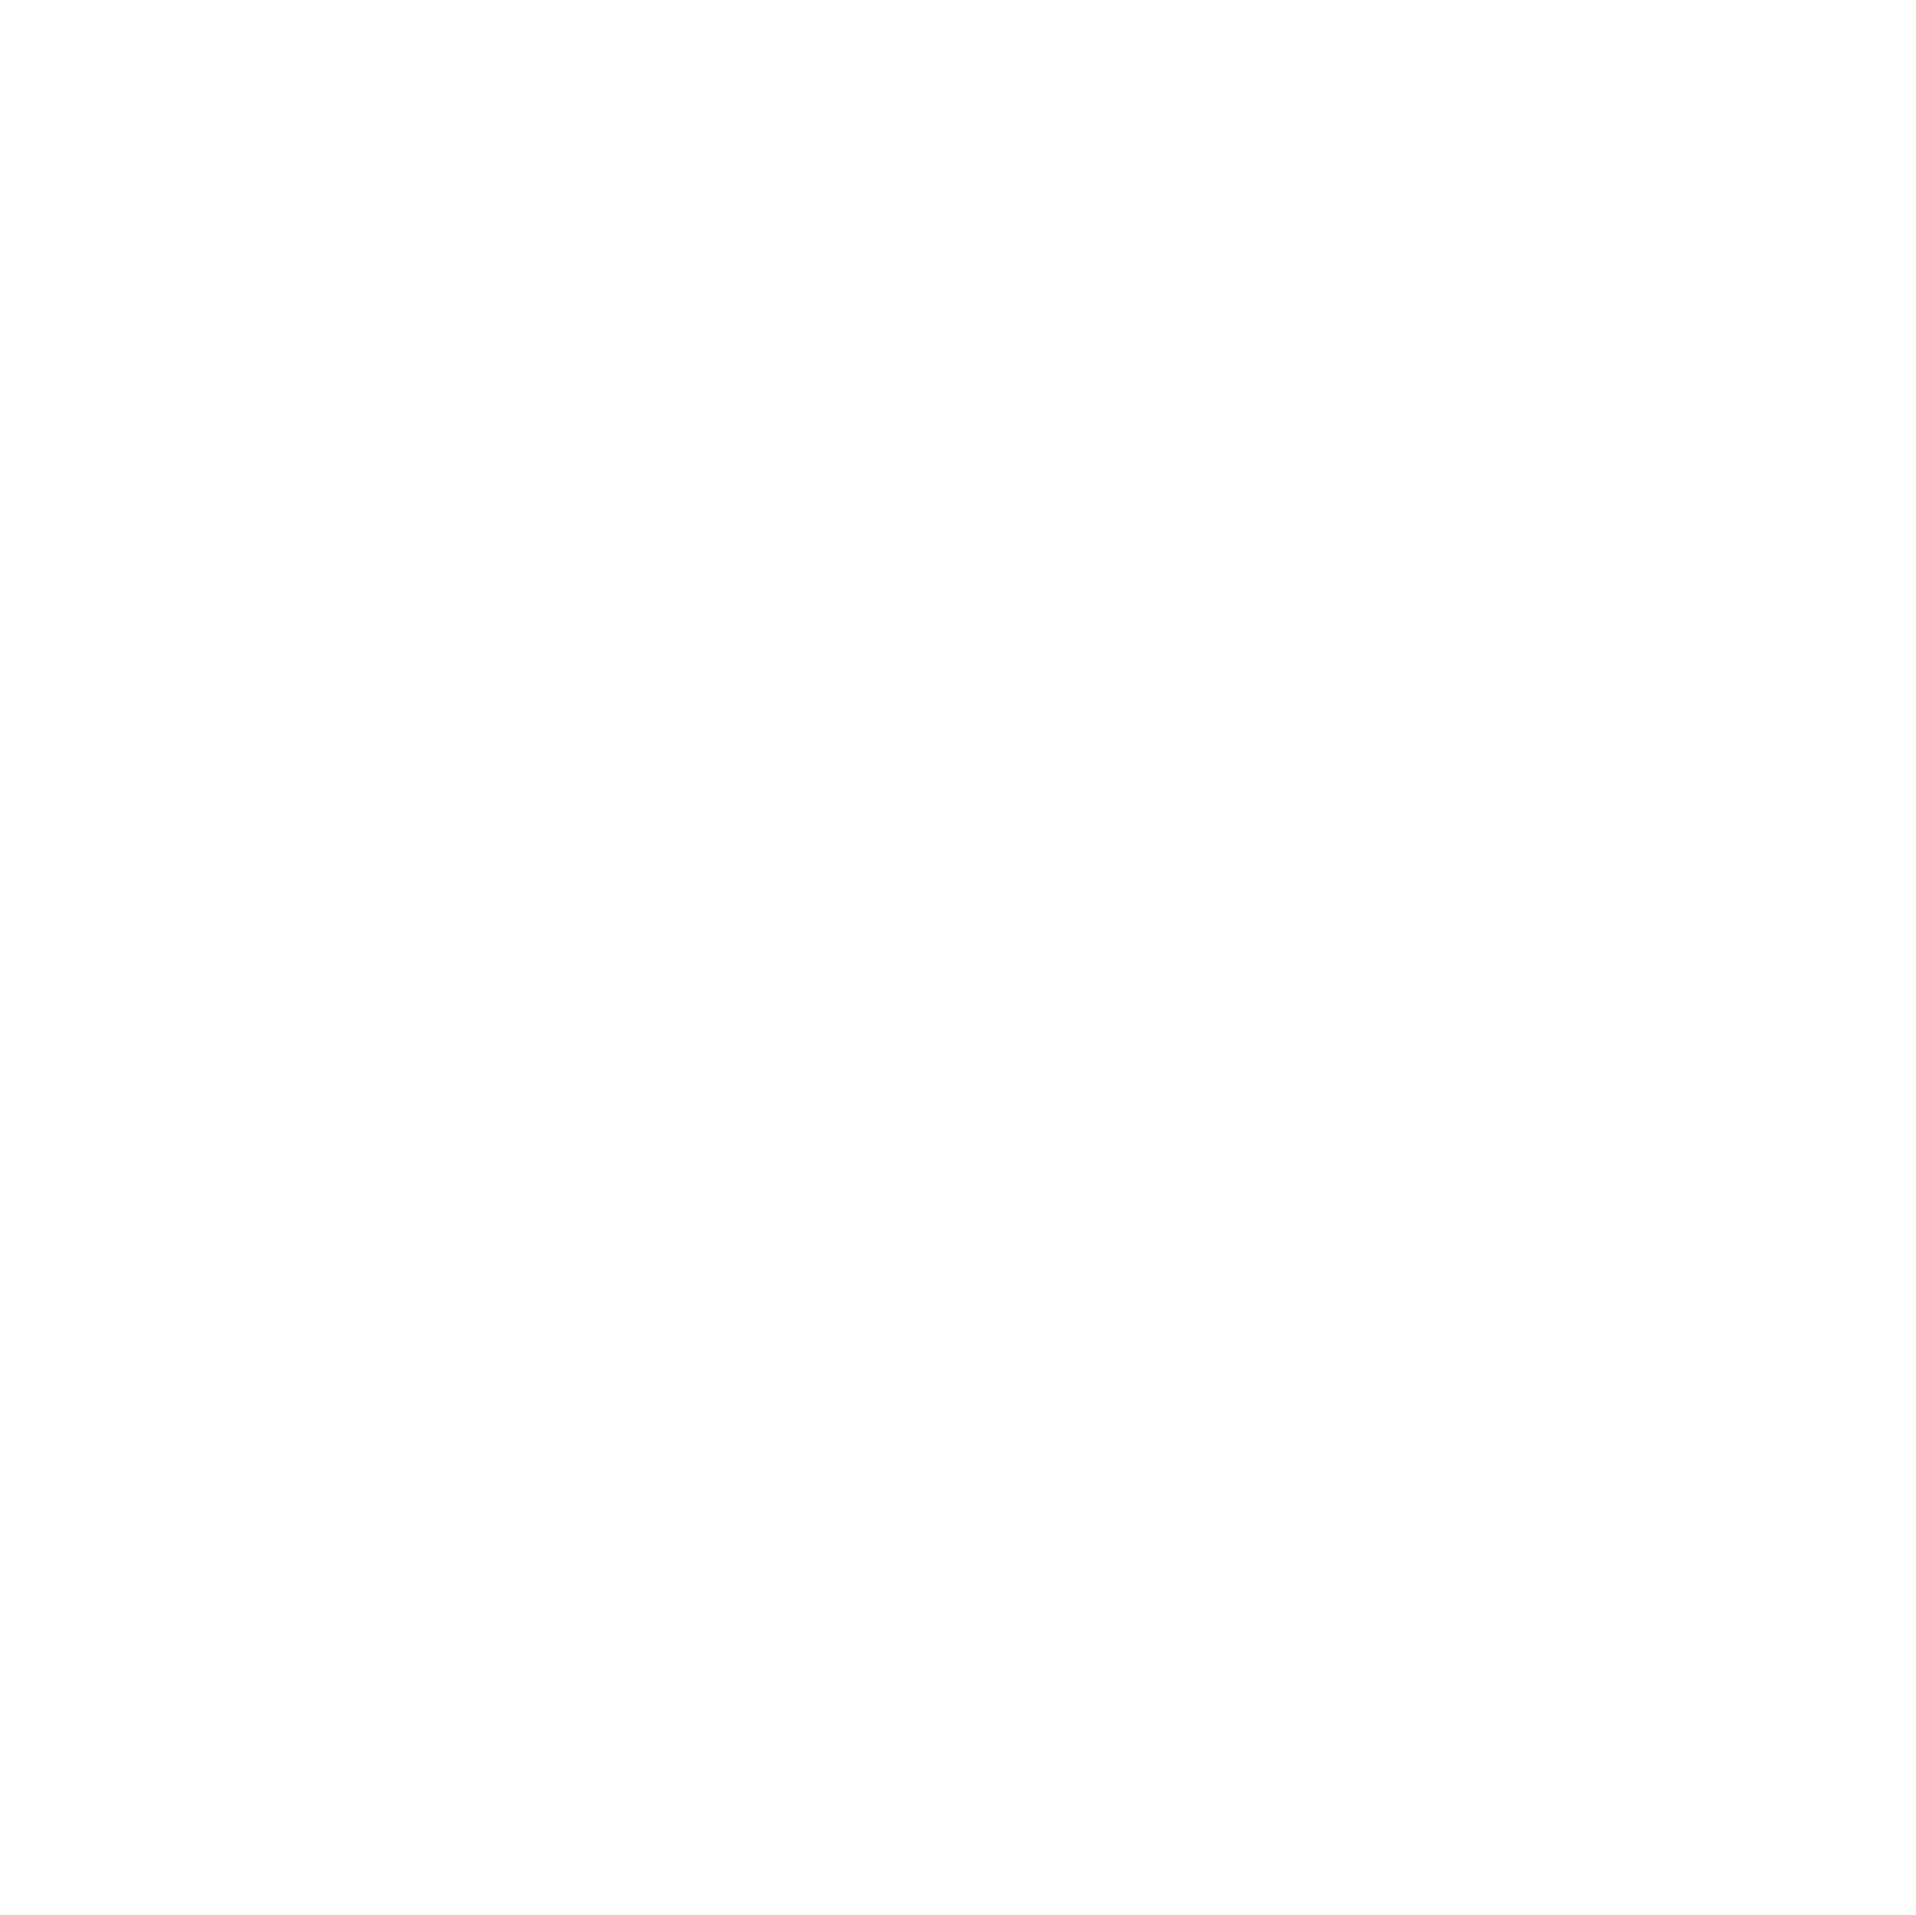 The Cornish Scent Company